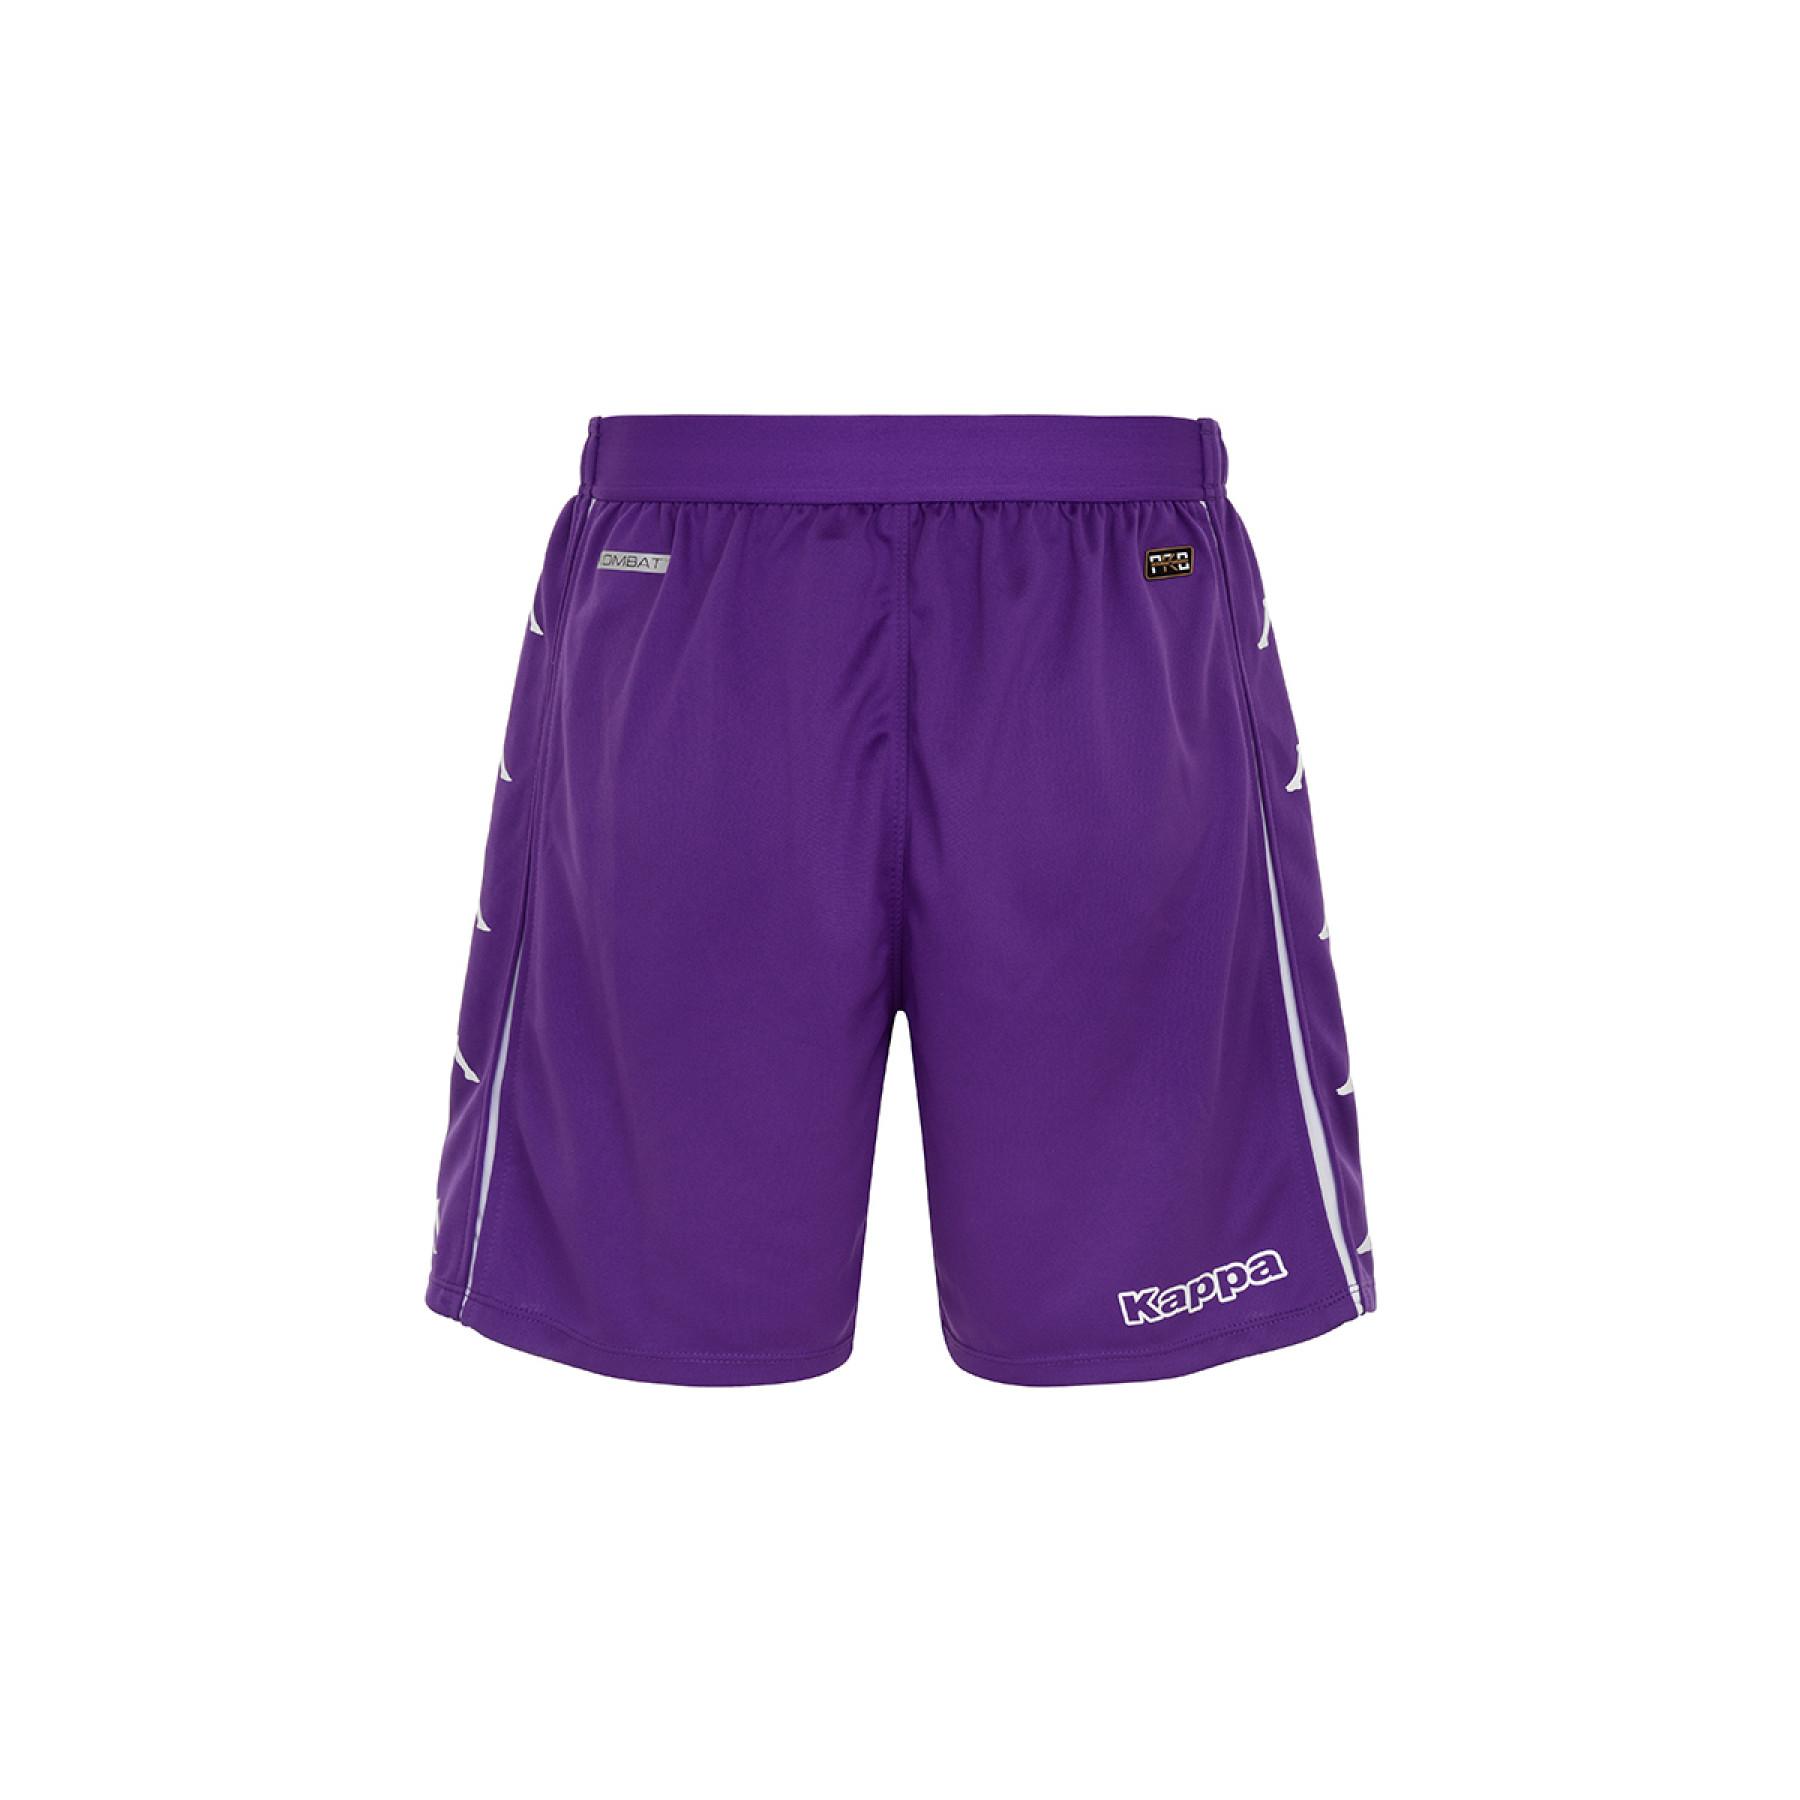 Home shorts Fiorentina AC 2020/21